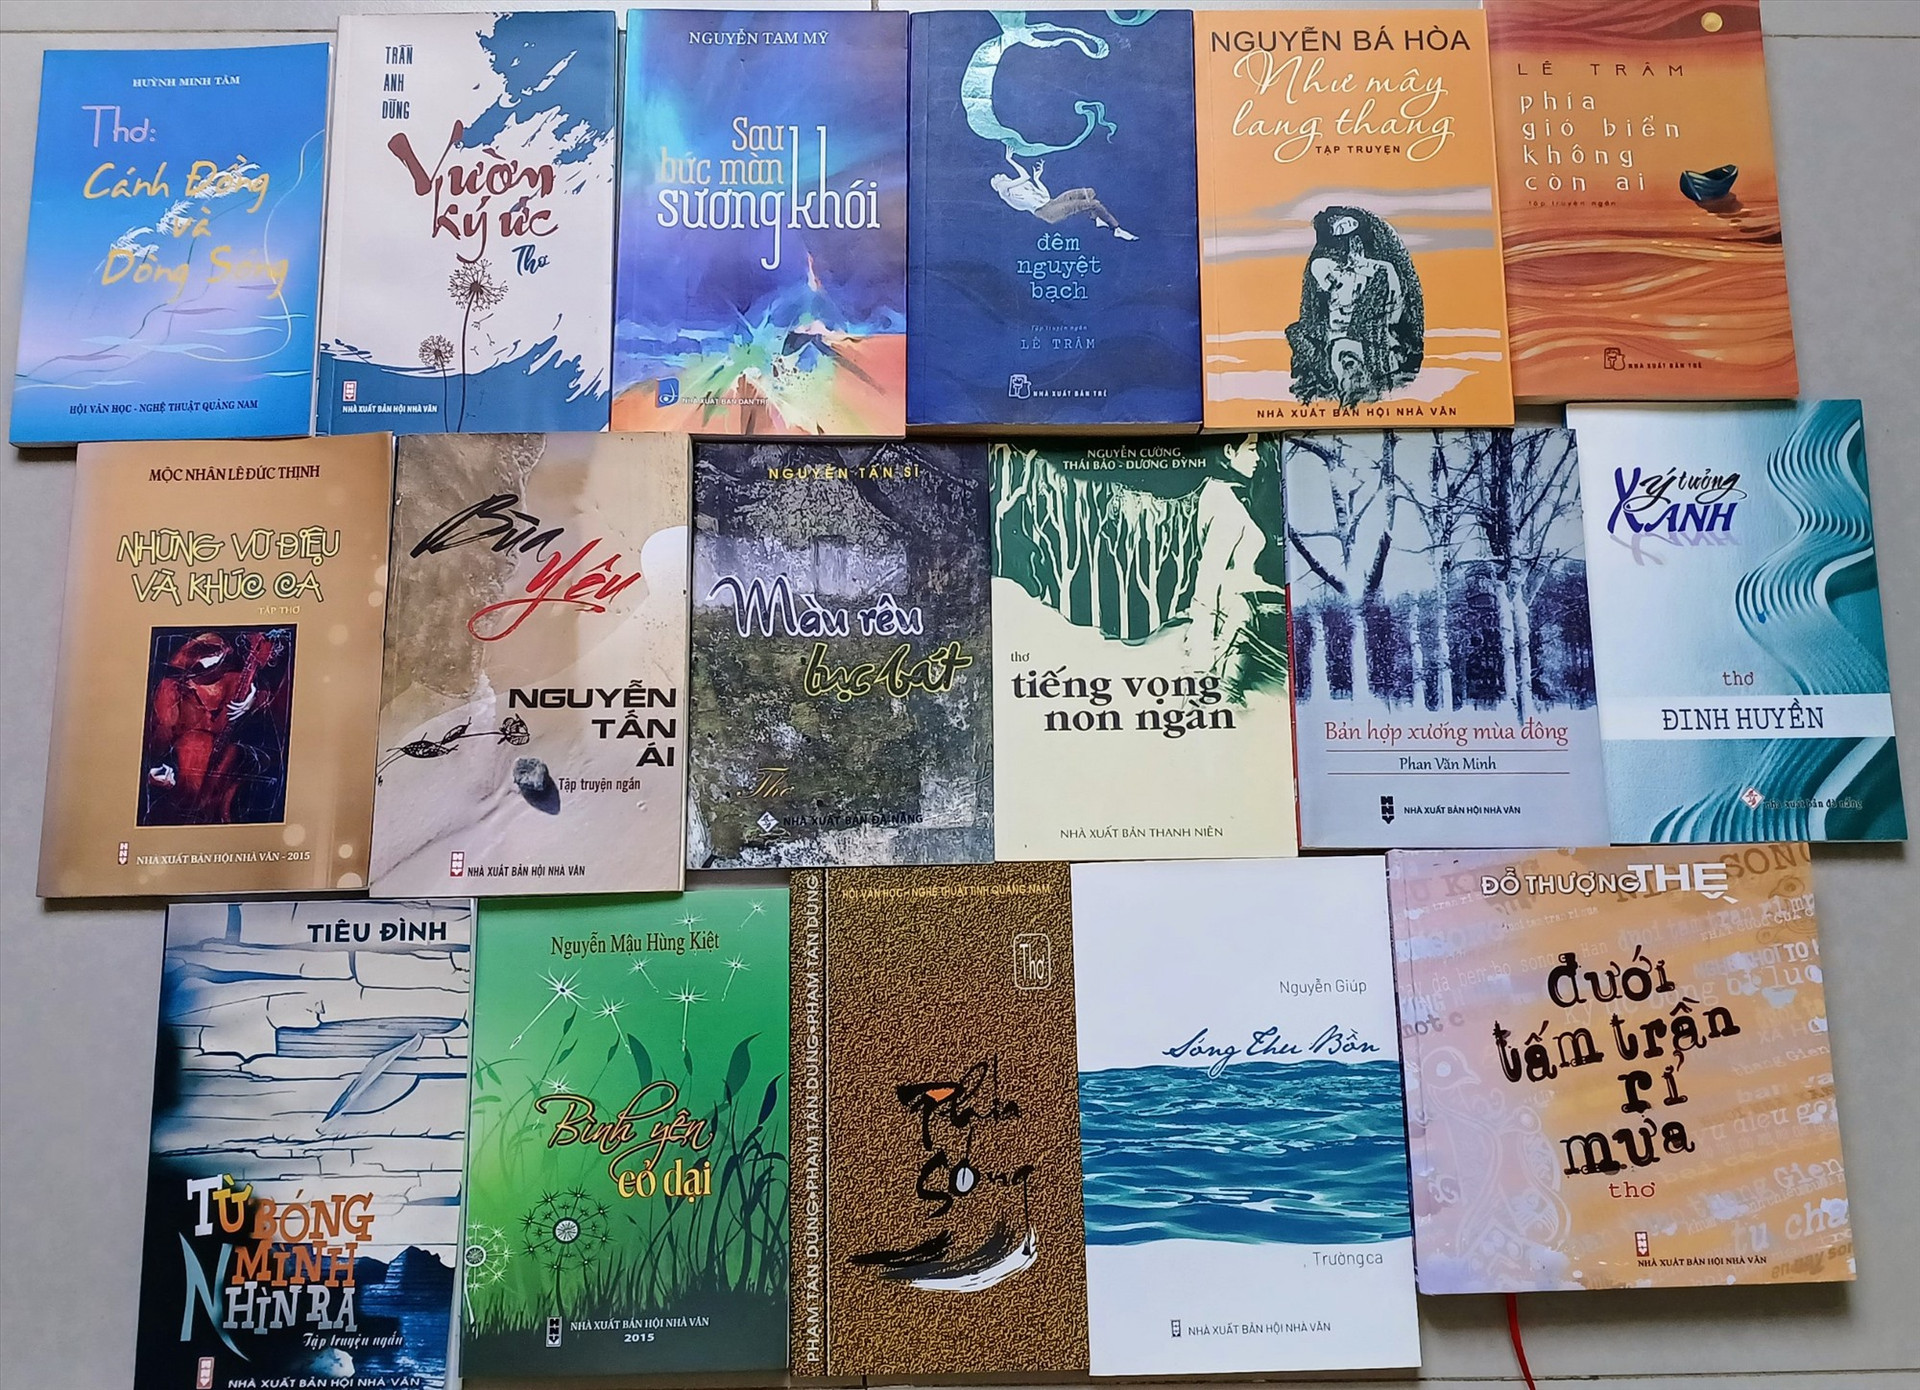 Tuy chưa có hẳn một dòng, nhưng nhiều tác phẩm văn học Quảng Nam đã mang hơi thở của văn chương sinh thái. Ảnh: B.A